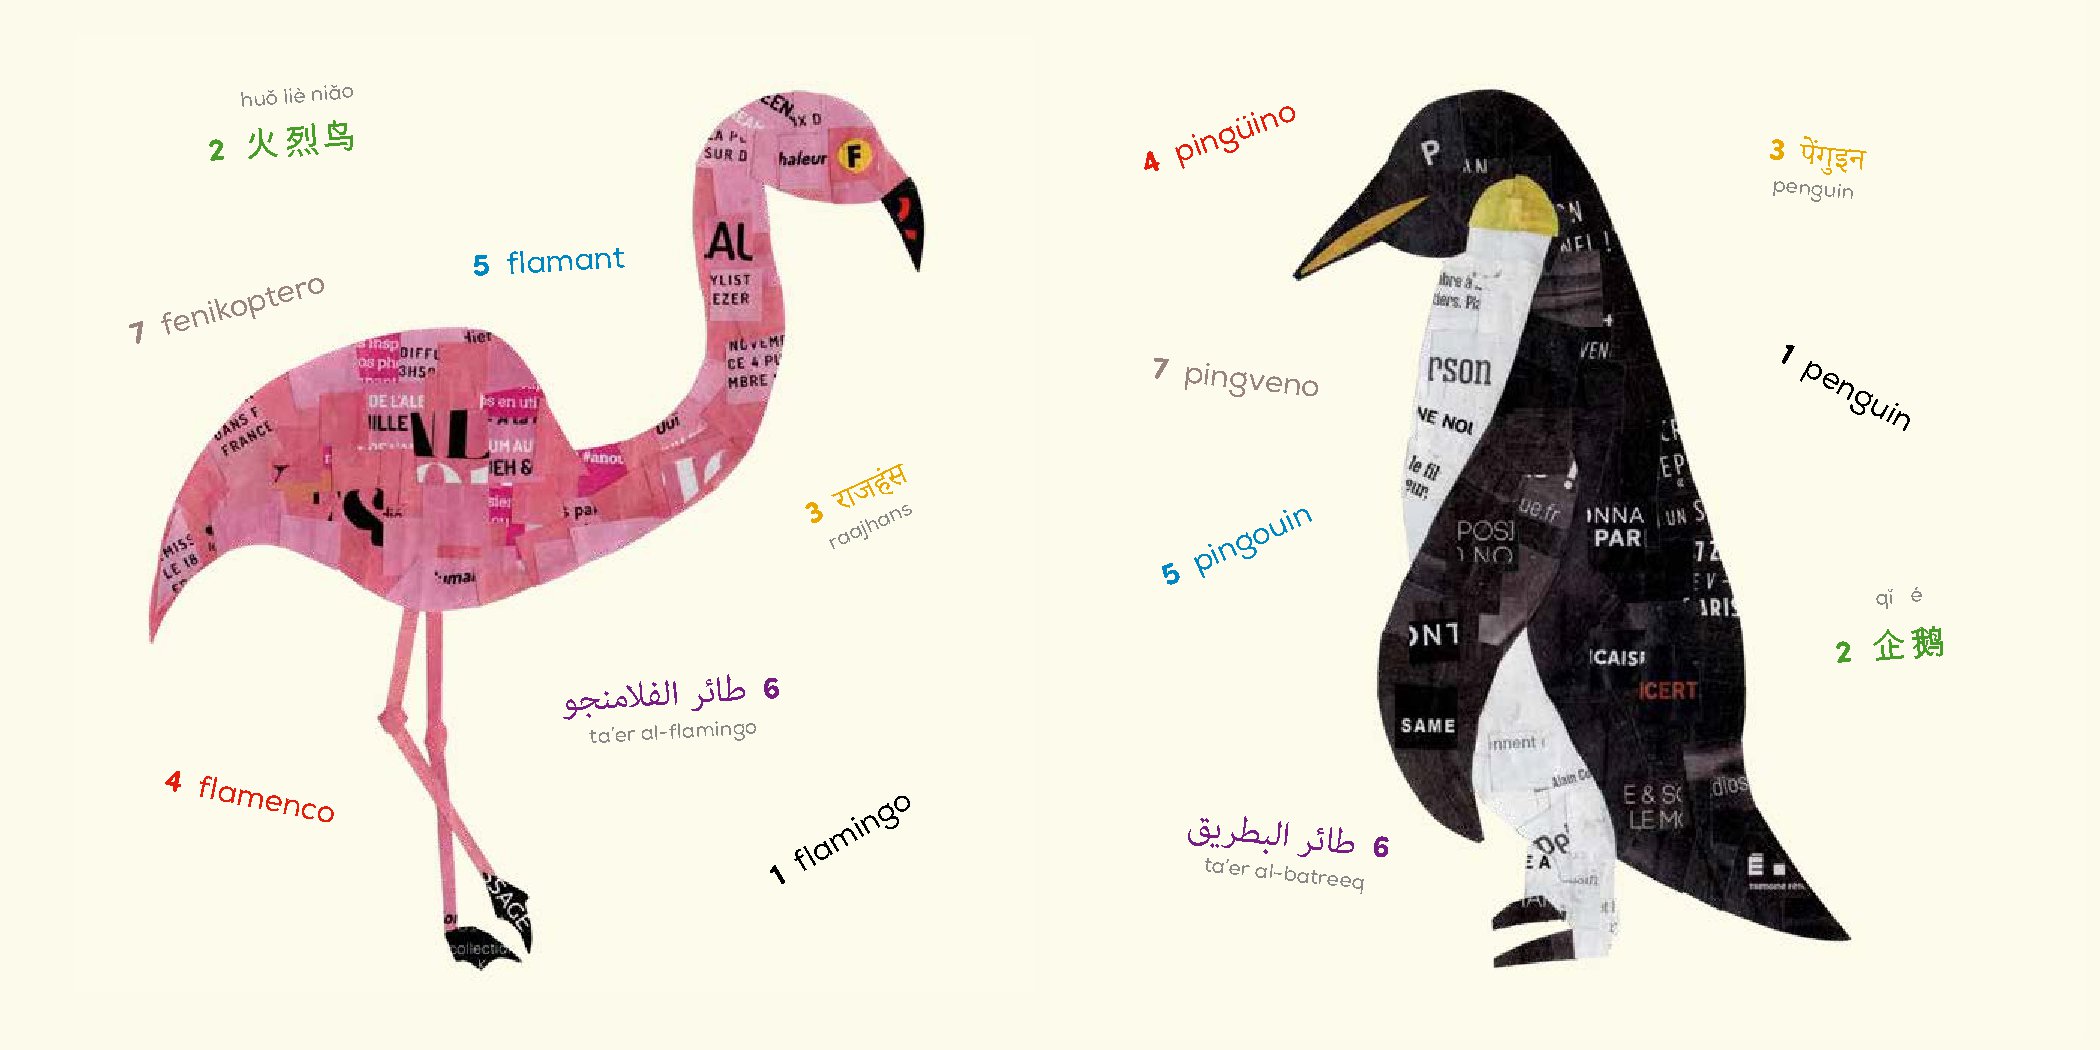 Animals (Multilingual Board Book)